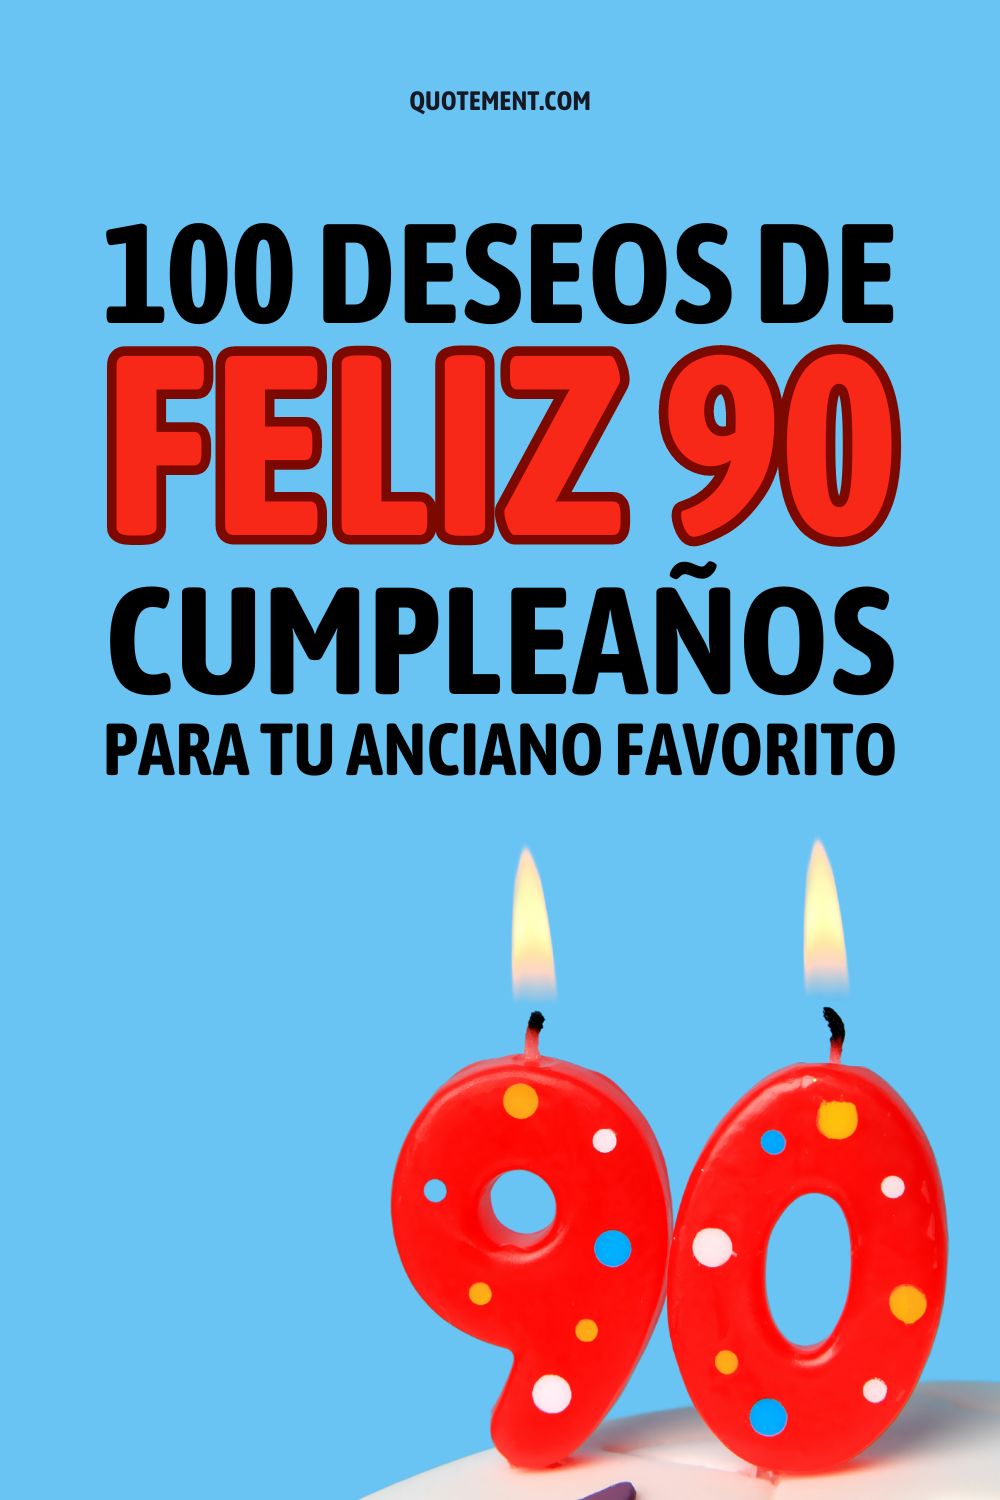 100 fantásticos deseos de feliz 90 cumpleaños para una persona de 90 años